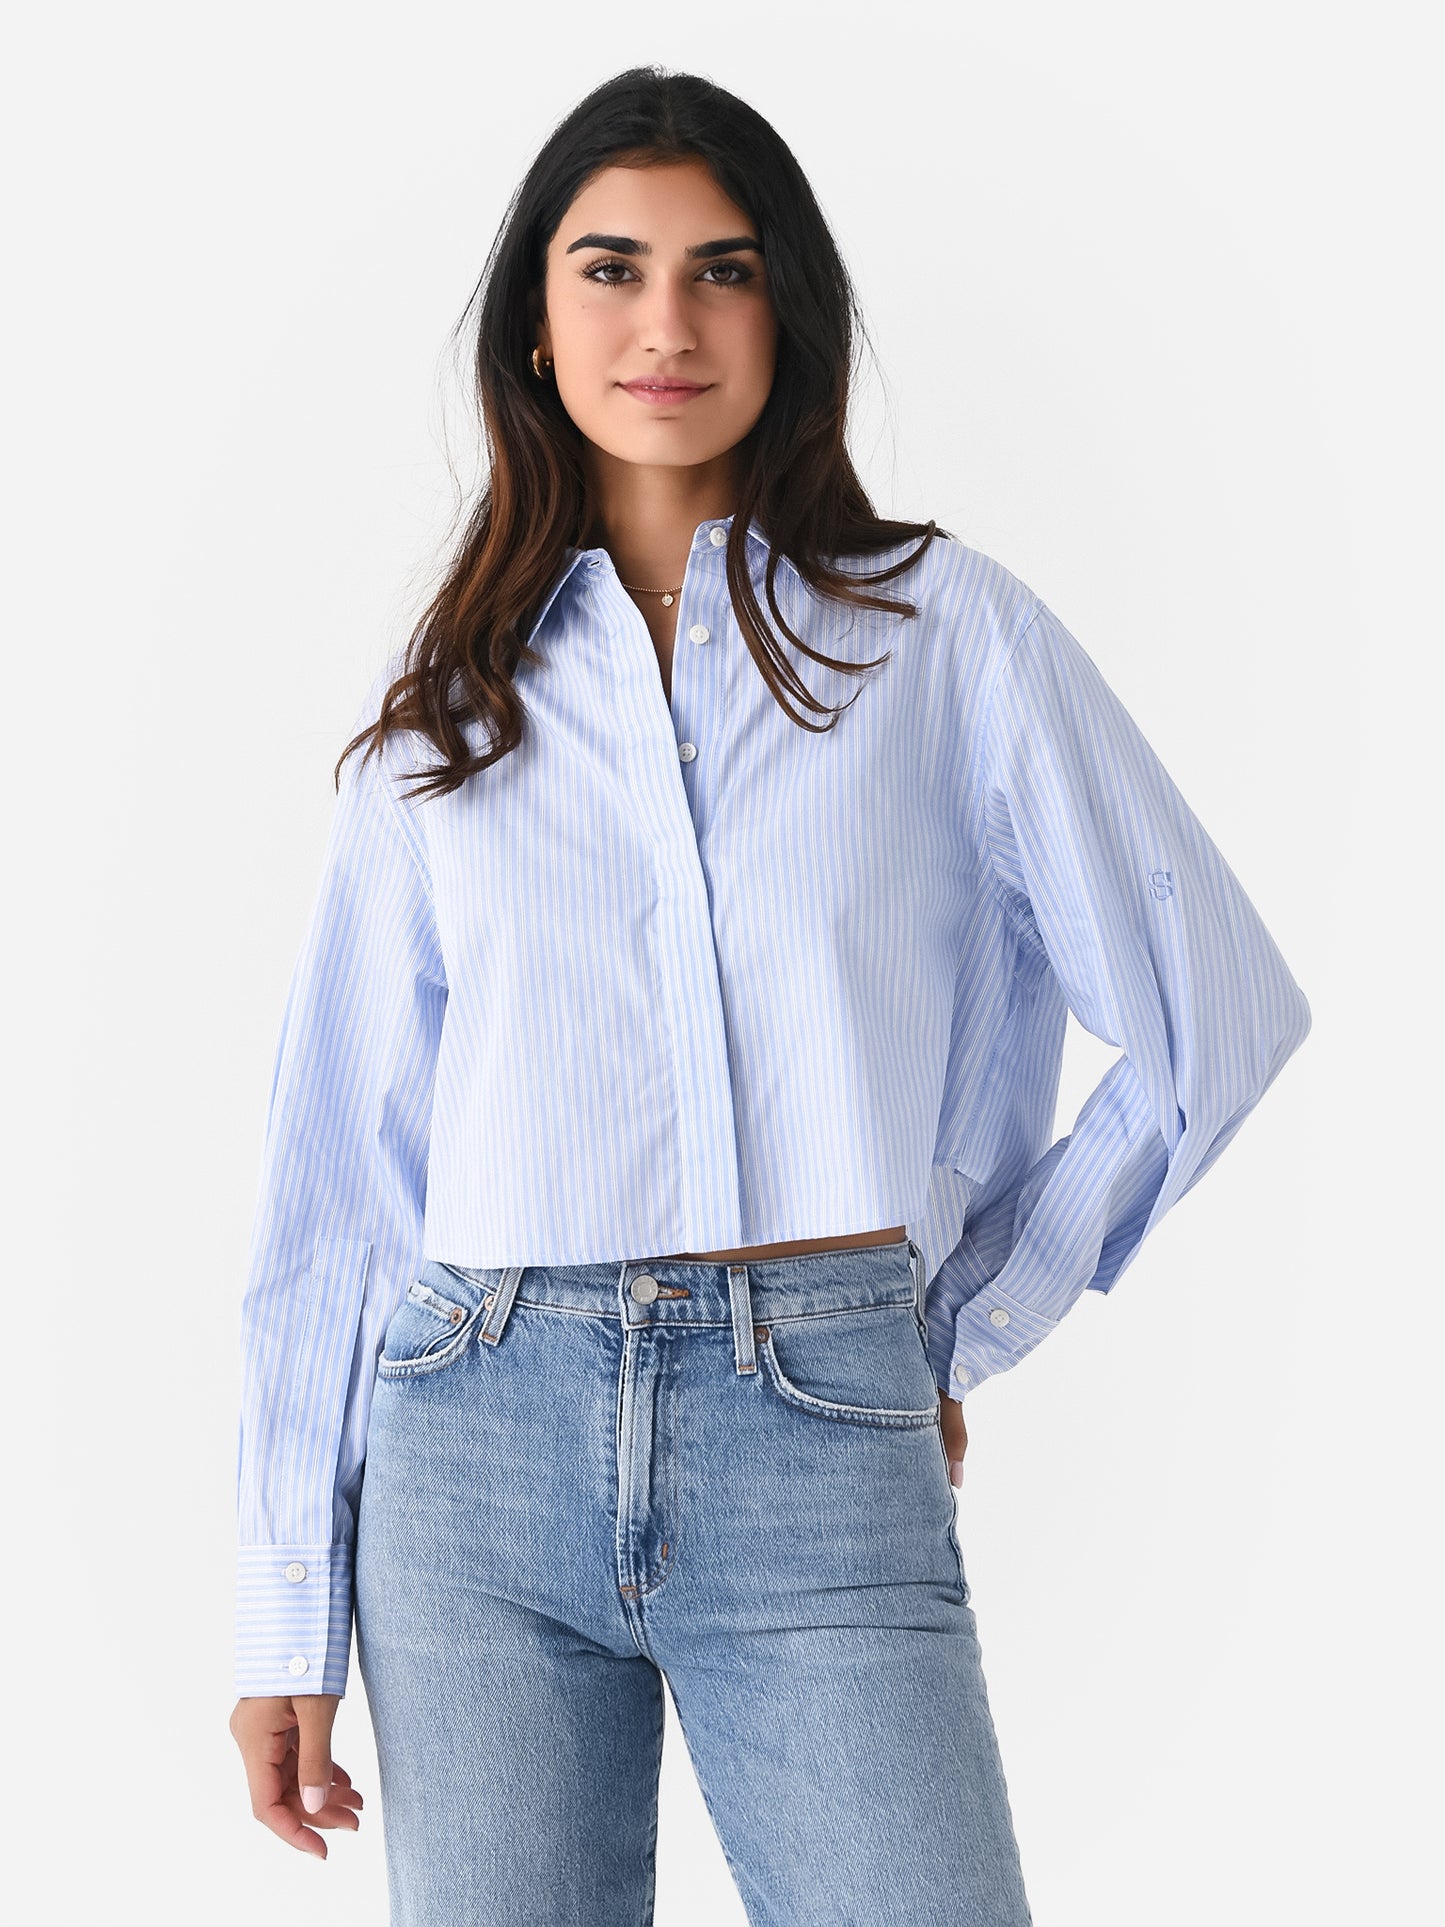 Simkhai Women's Renata Cropped Button-Down Shirt